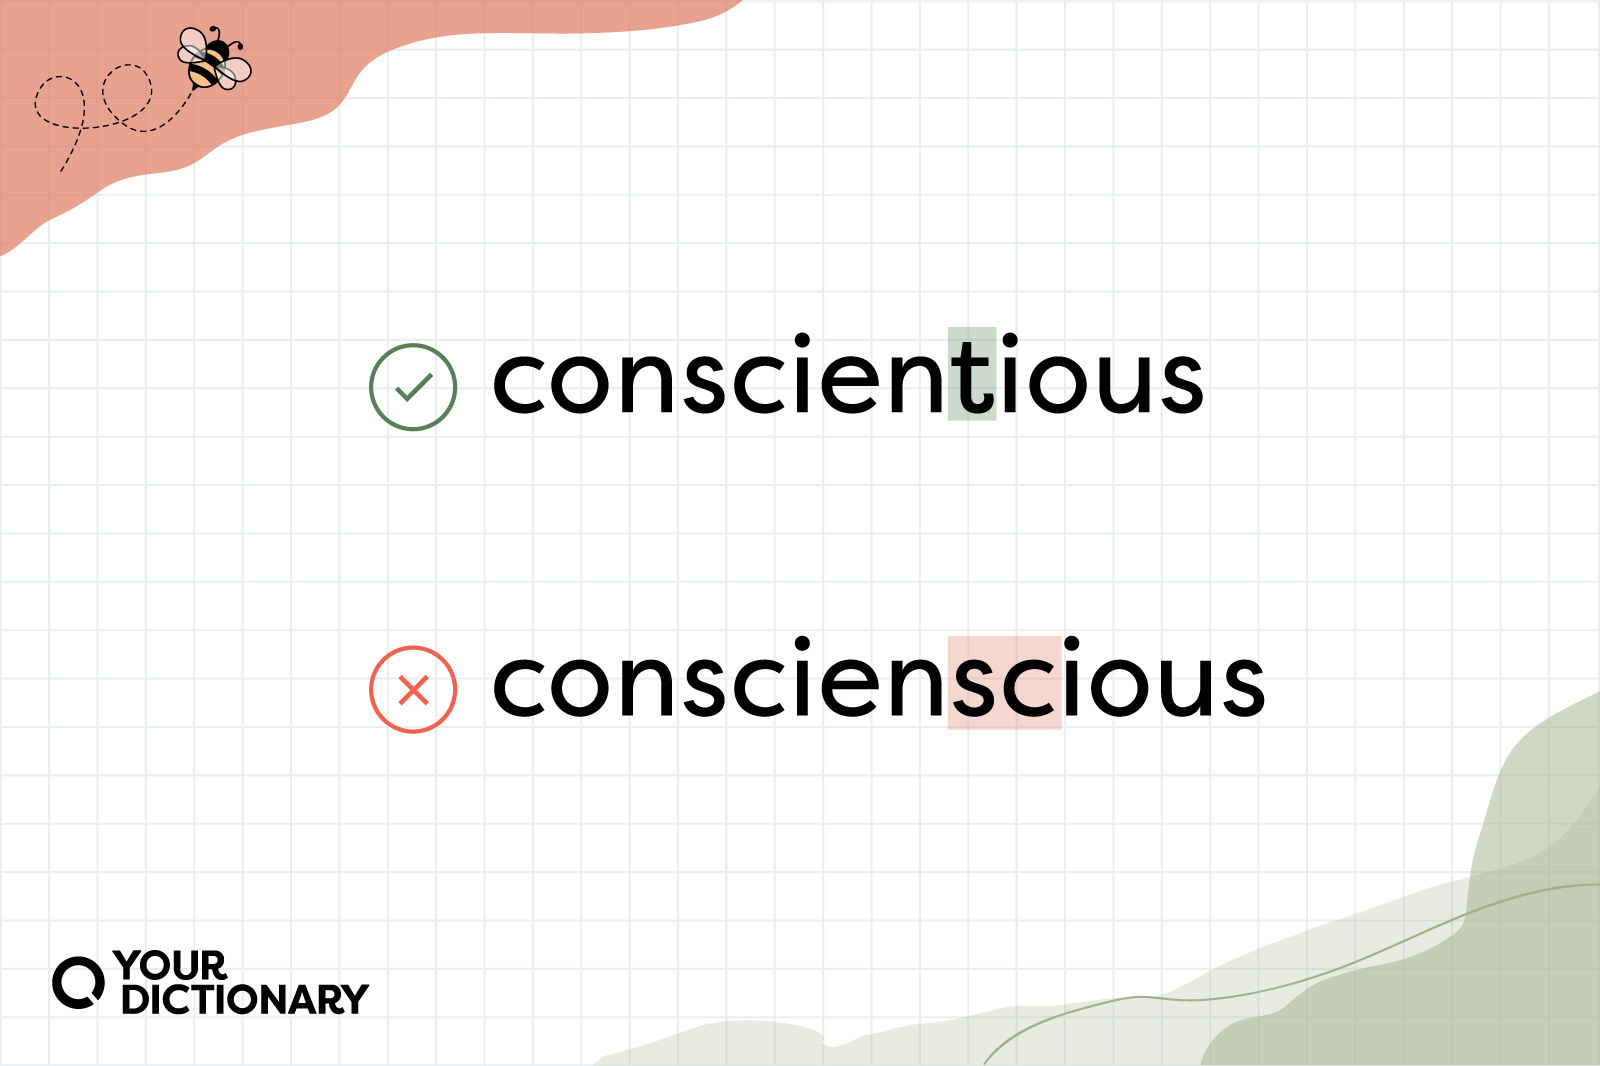 Conscientious correction